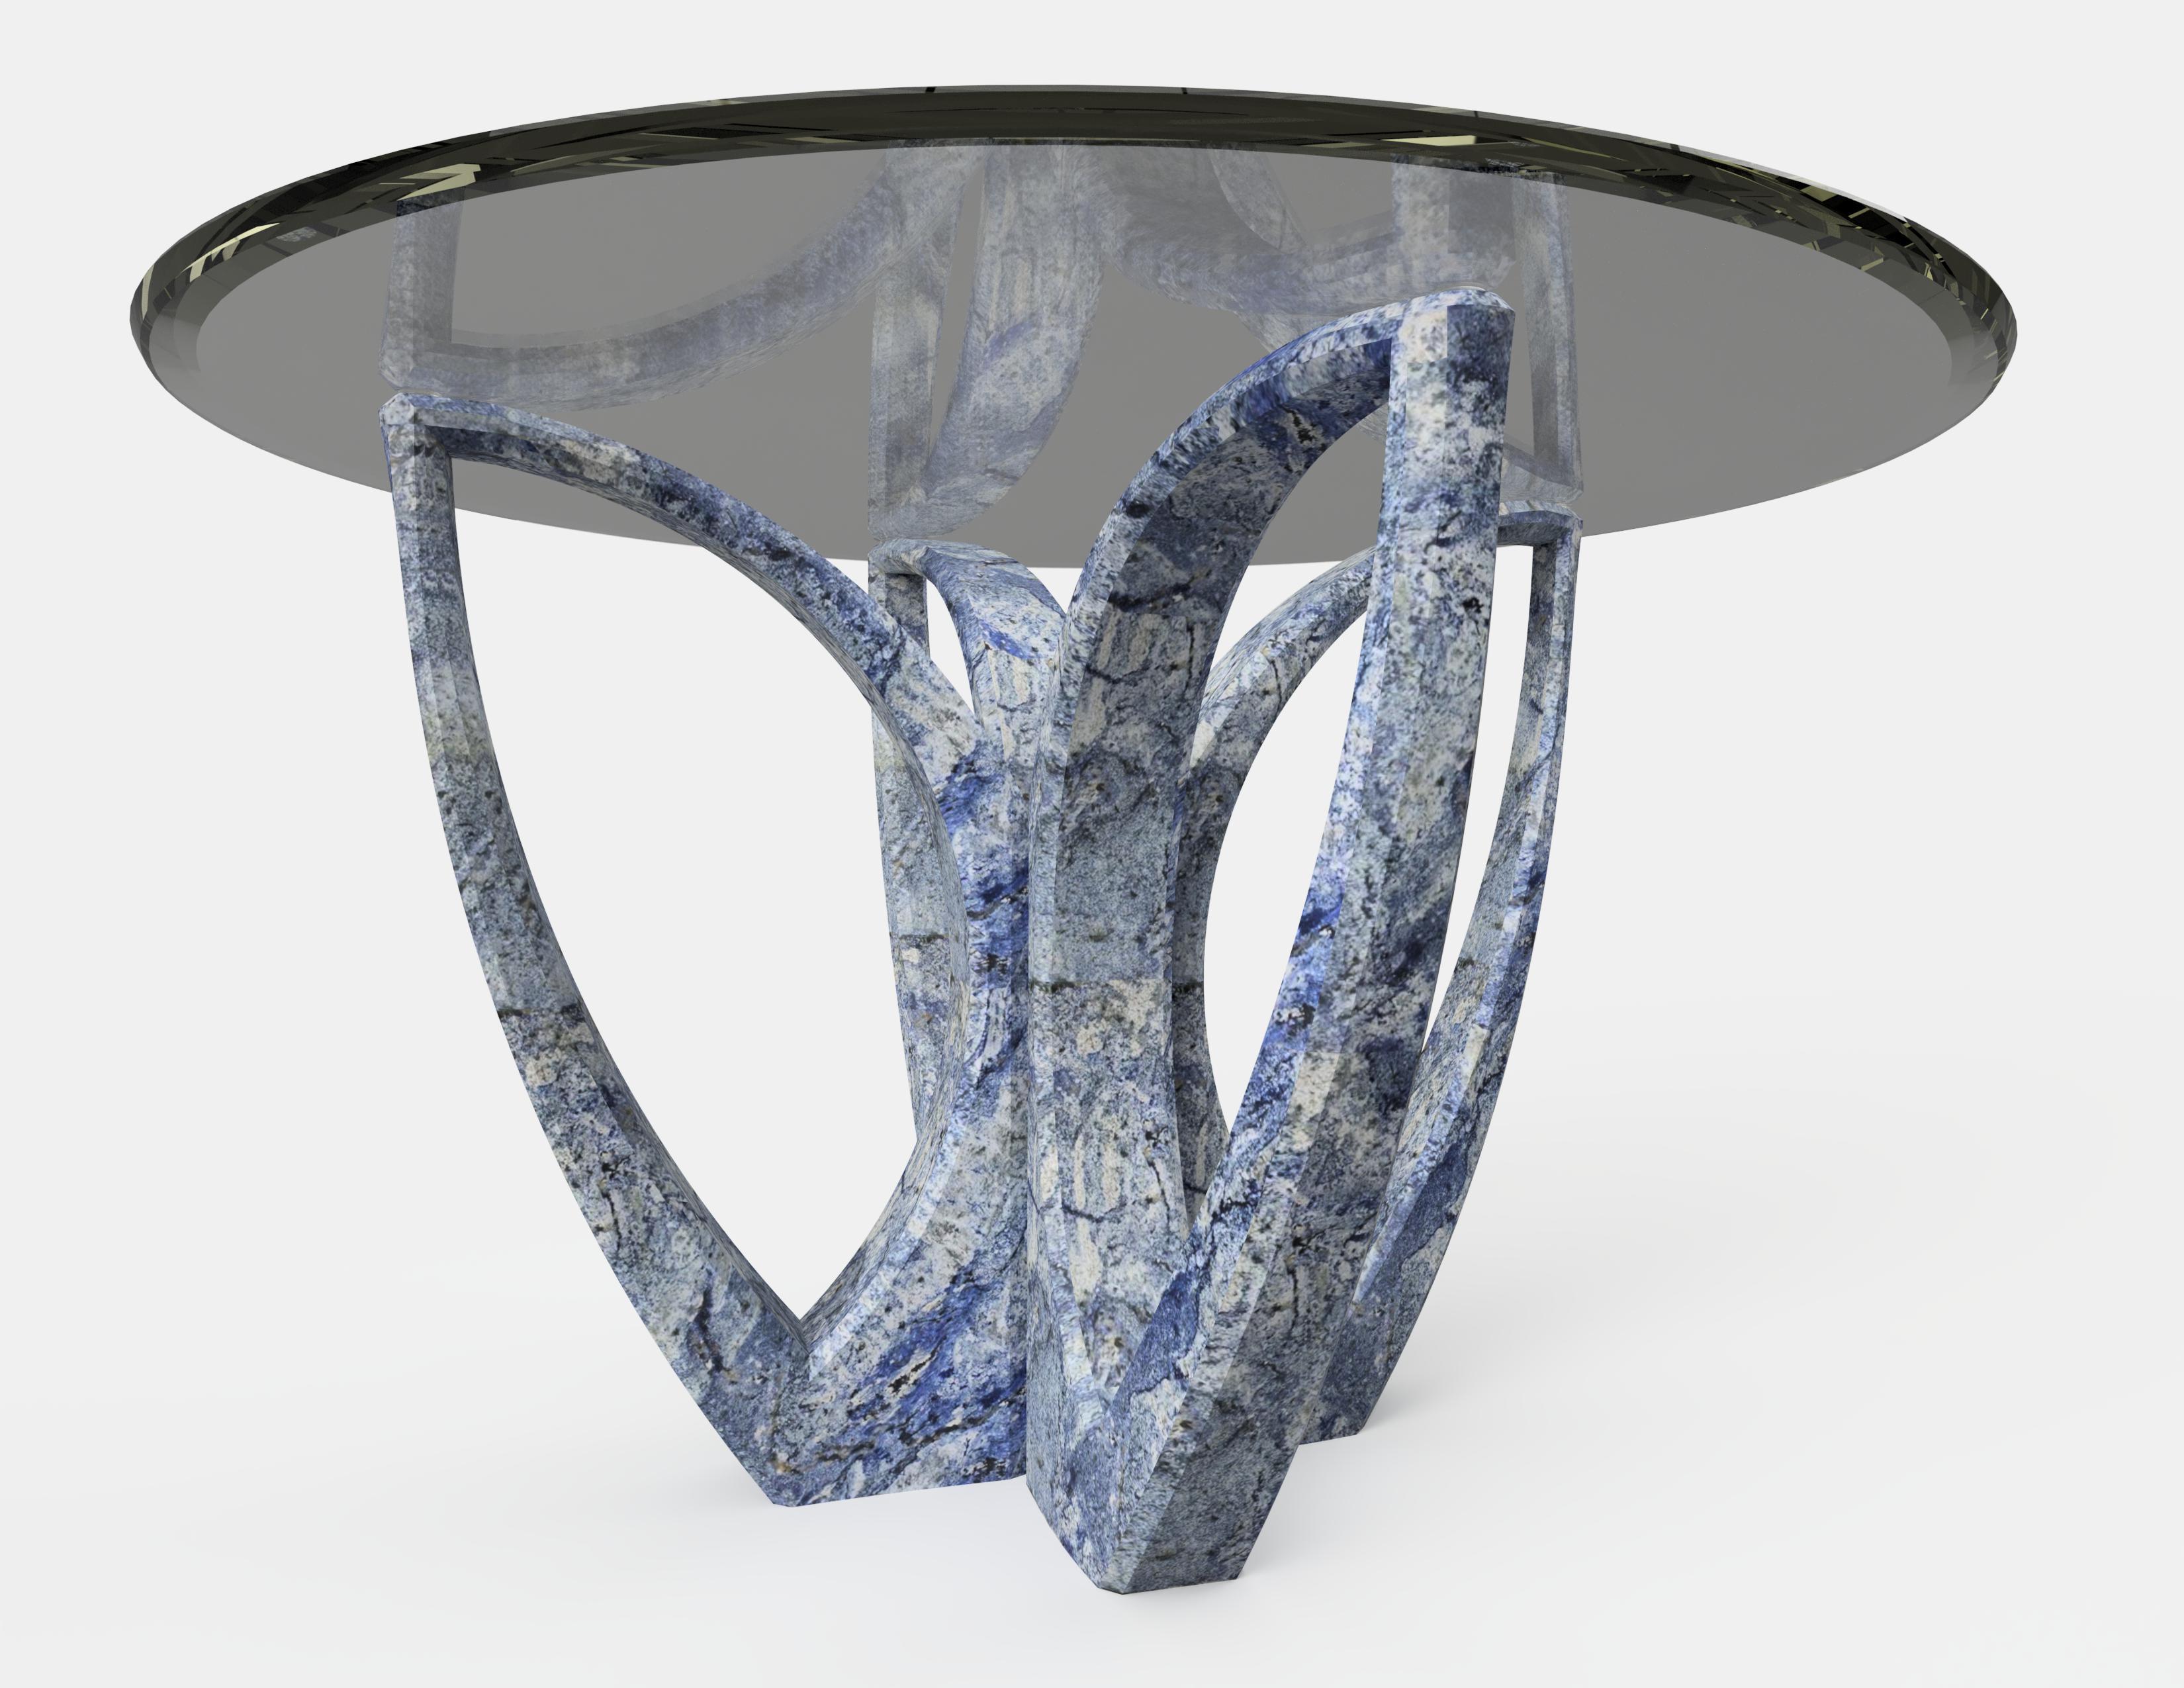 La table basse lotus diamant, 1 de 1 par Grzegorz Majka
Edition 1 de 1
Dimensions : 47.24 x 47.24 x 29.53 in
Matériaux : Plateau en verre fumé. Base onyx. 


La collection Diamond prouve que tout est possible. Il va au-delà de la pensée